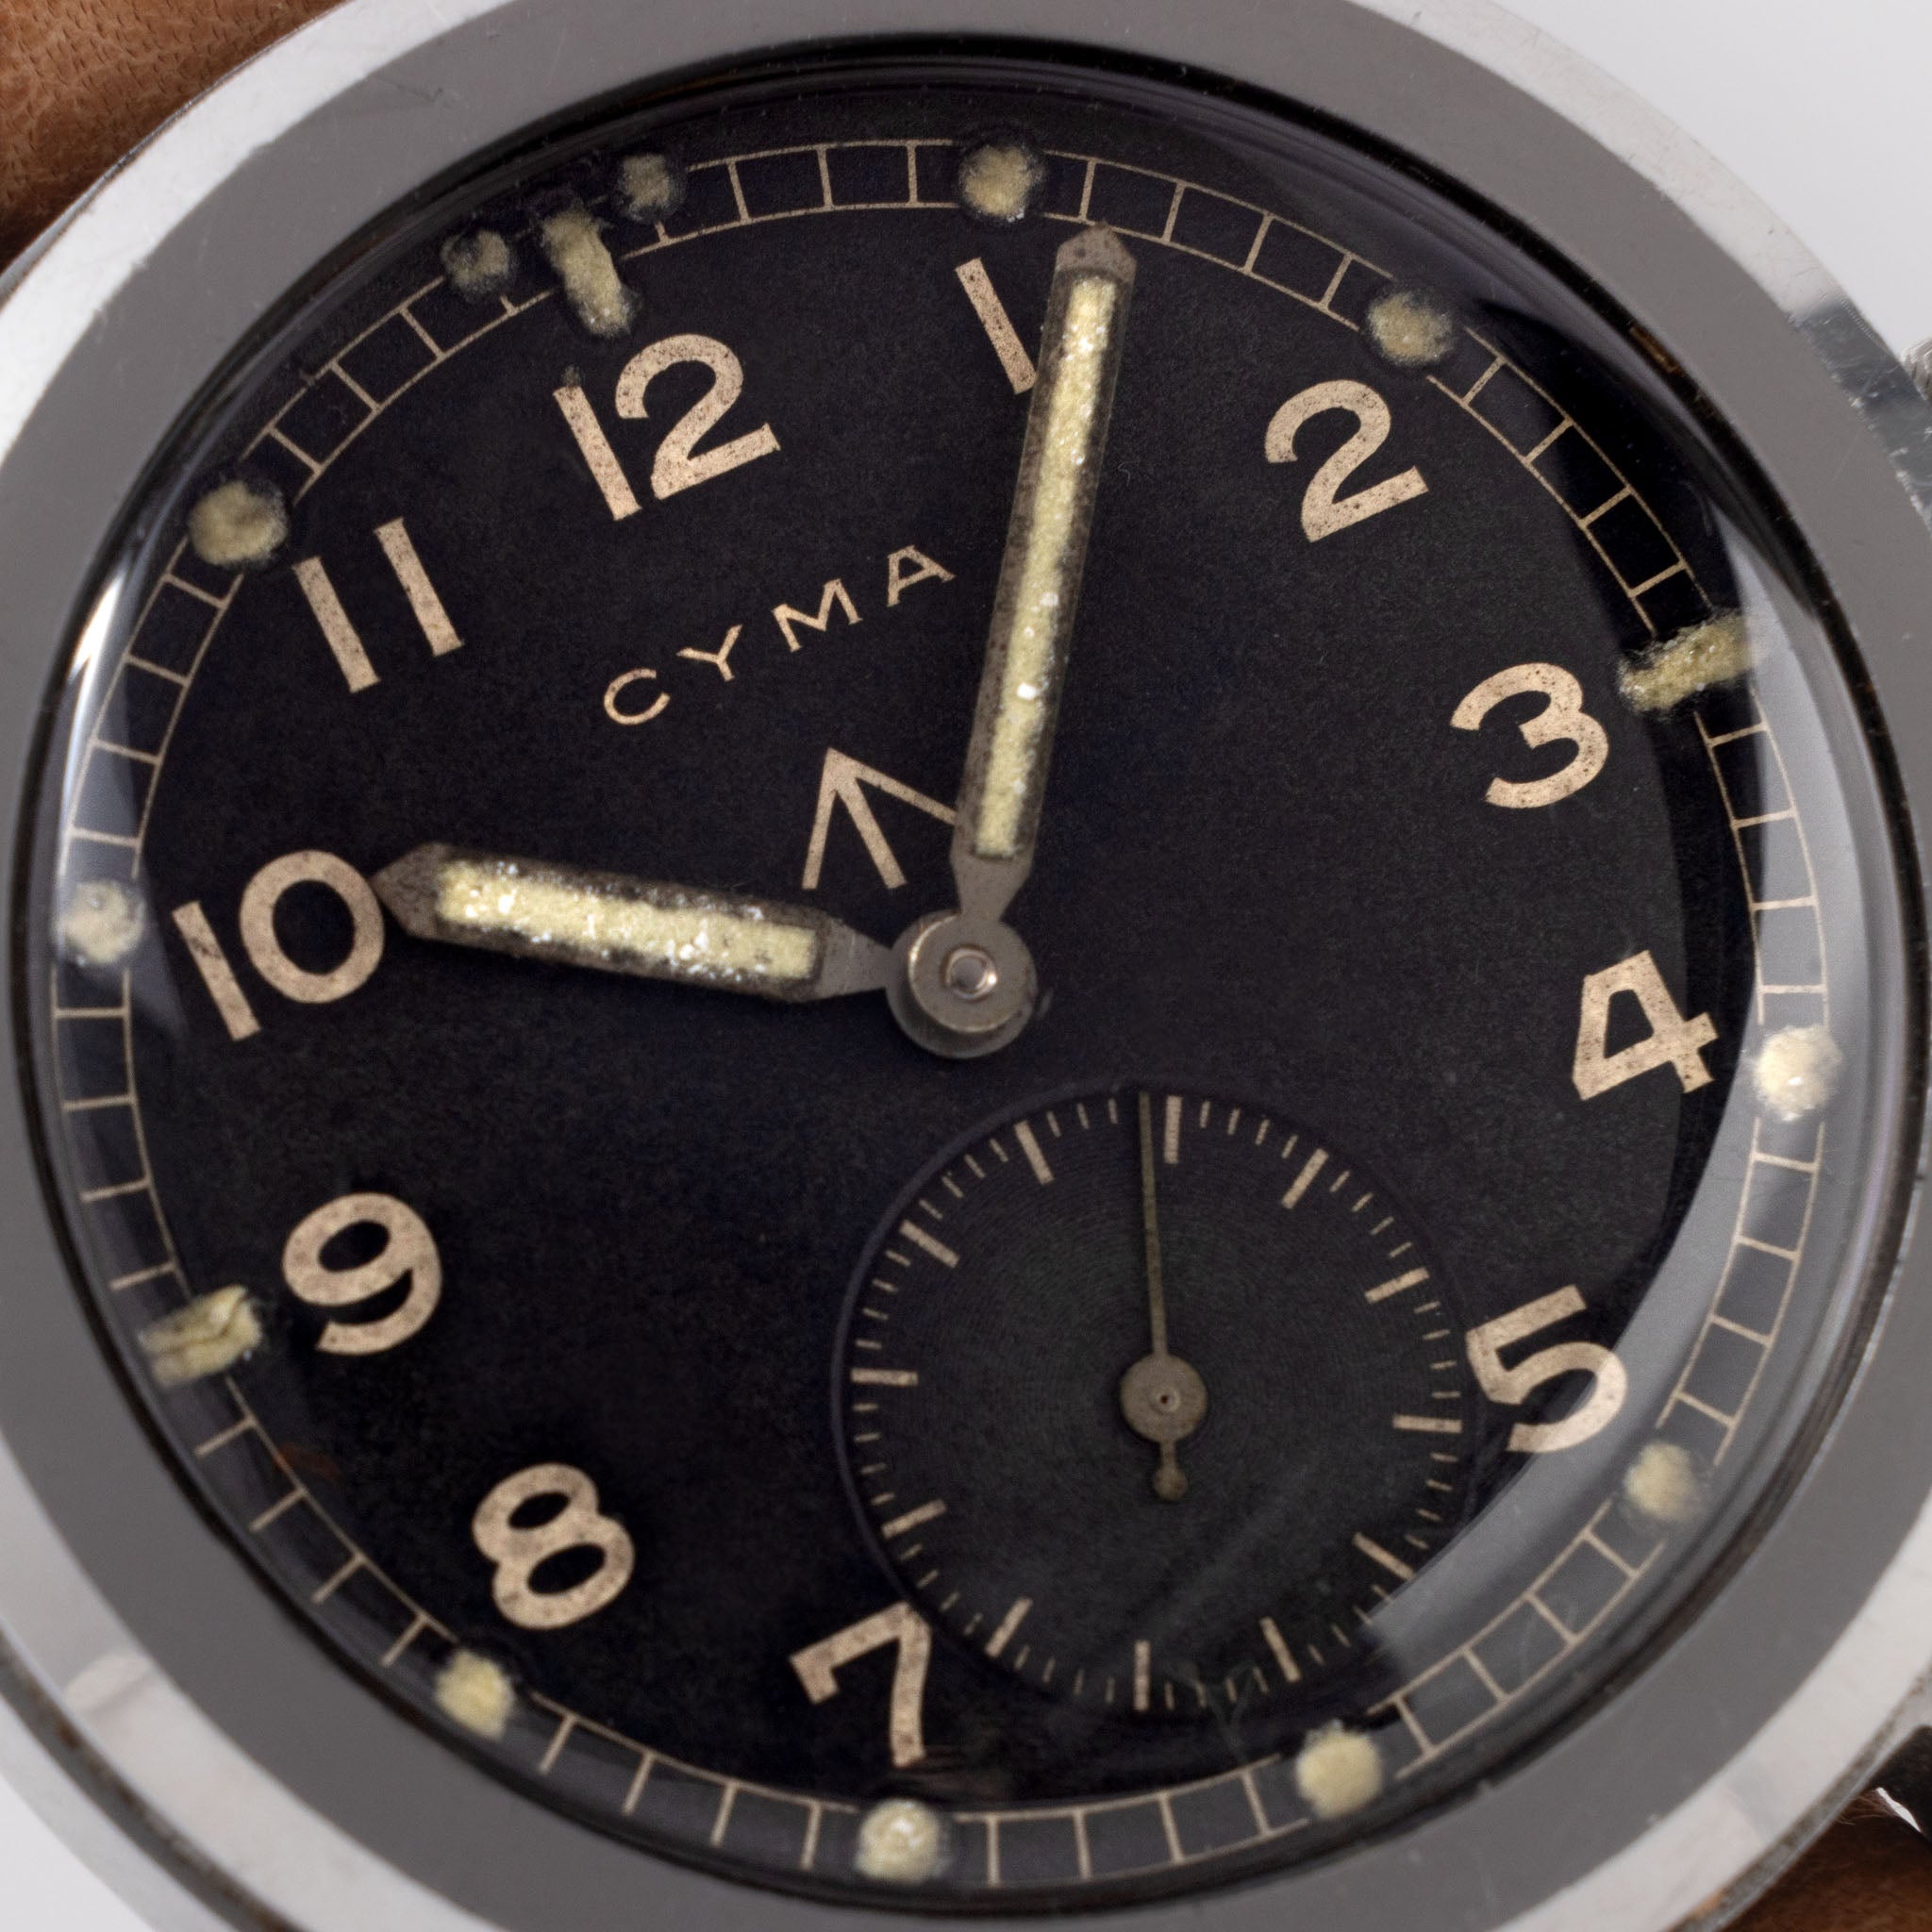 Cyma Dirty Dozen Military Issued Watch